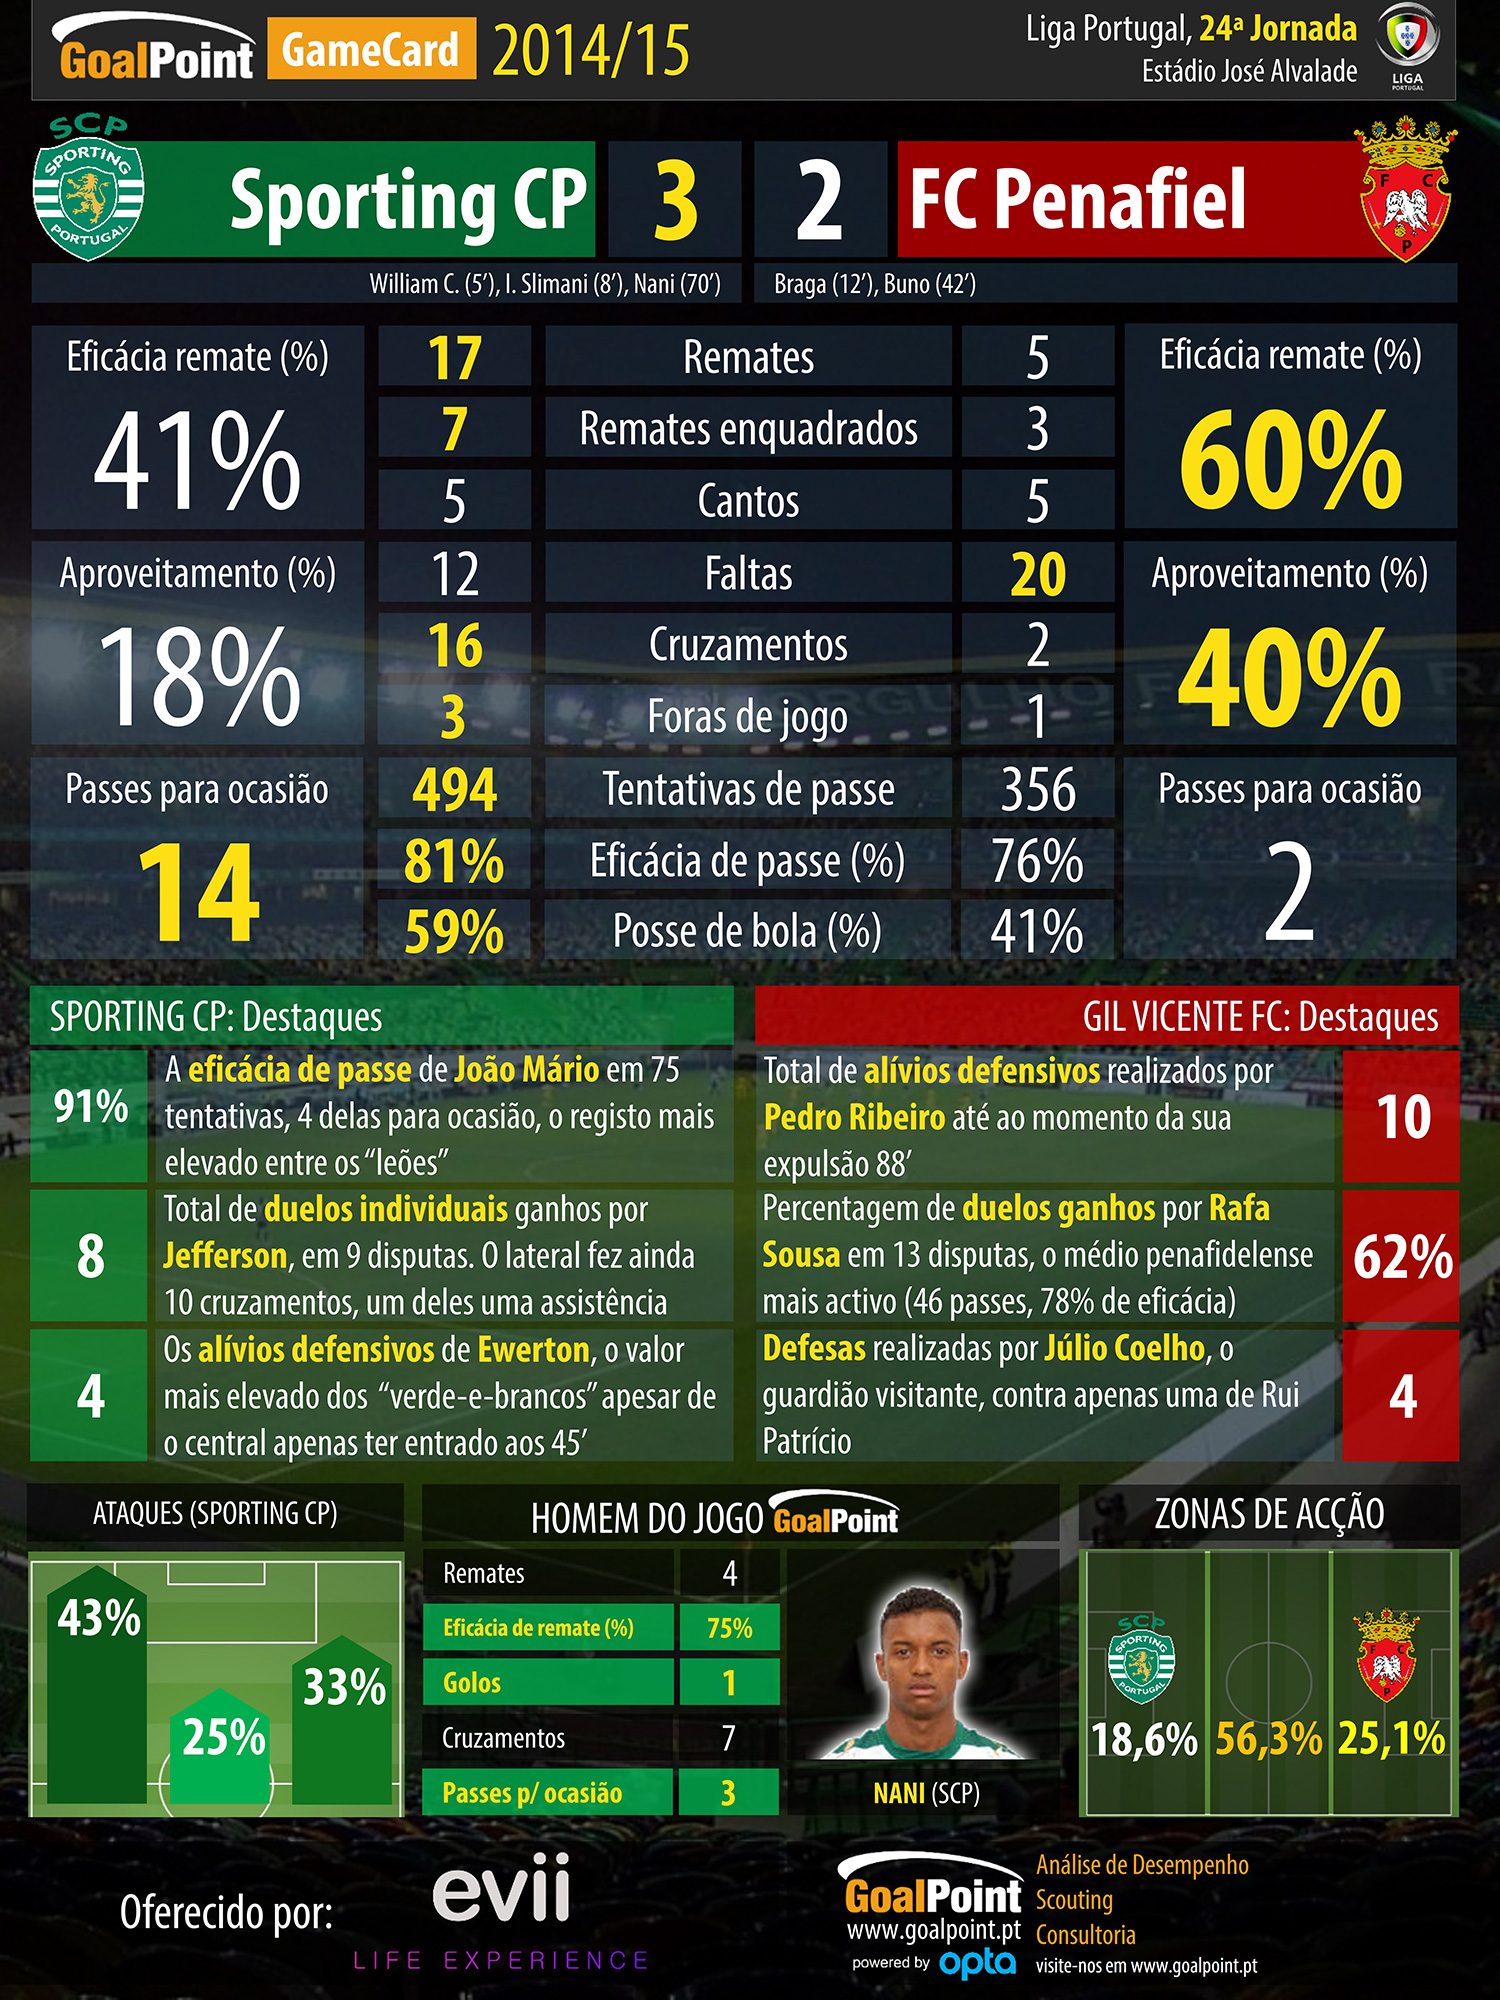 Liga NOS 2014/15 - GameCard,J24 - Arouca vs Benfica